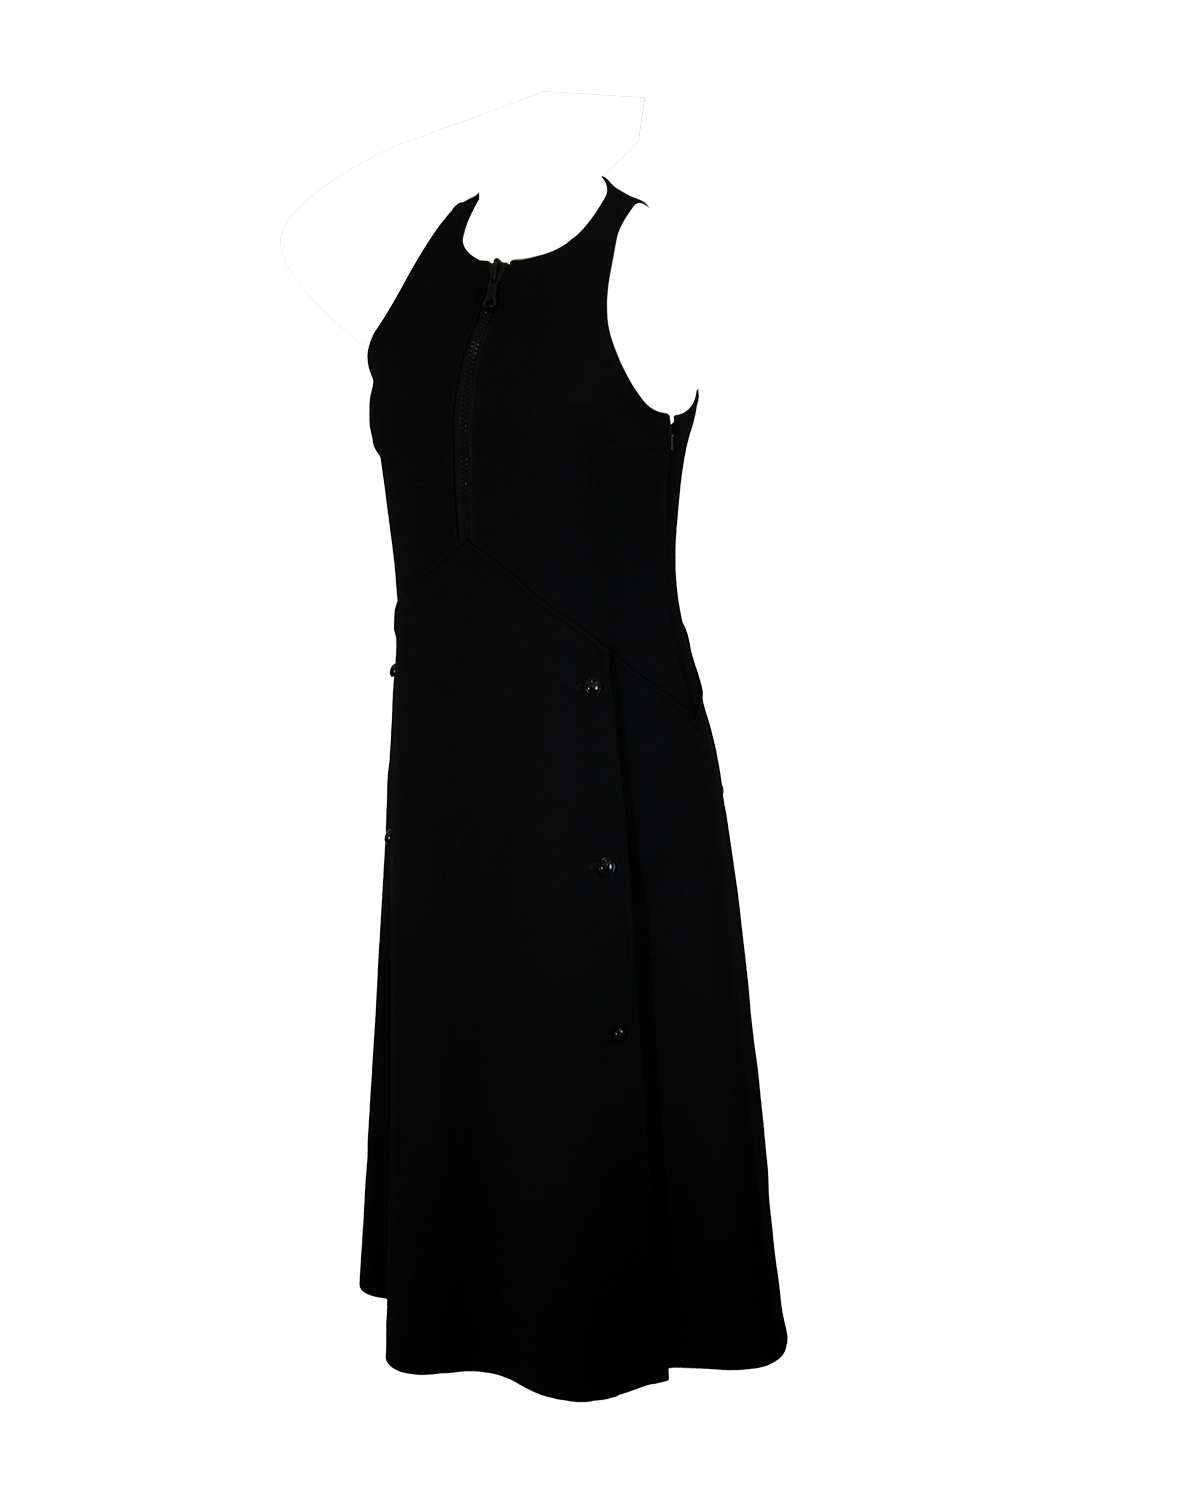 Black Dress from 1970s André Courrèges | The Secret Archive